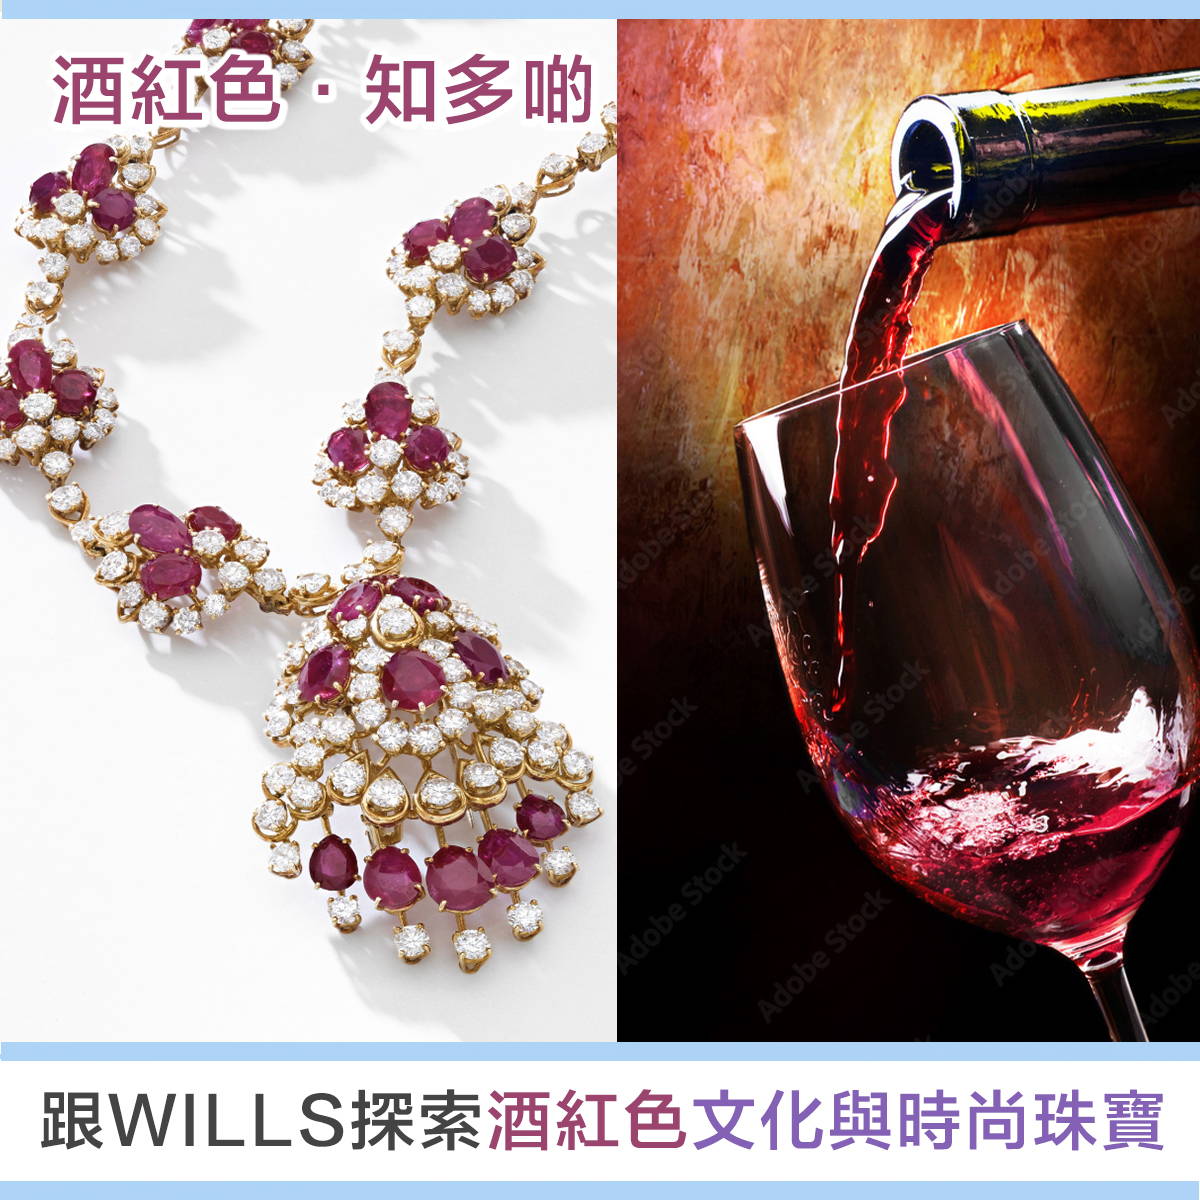 【寶石知識】酒紅色寶石 - 歐洲歷史、文化藝術與珠寶首飾設計 - WILLS JEWELLERY